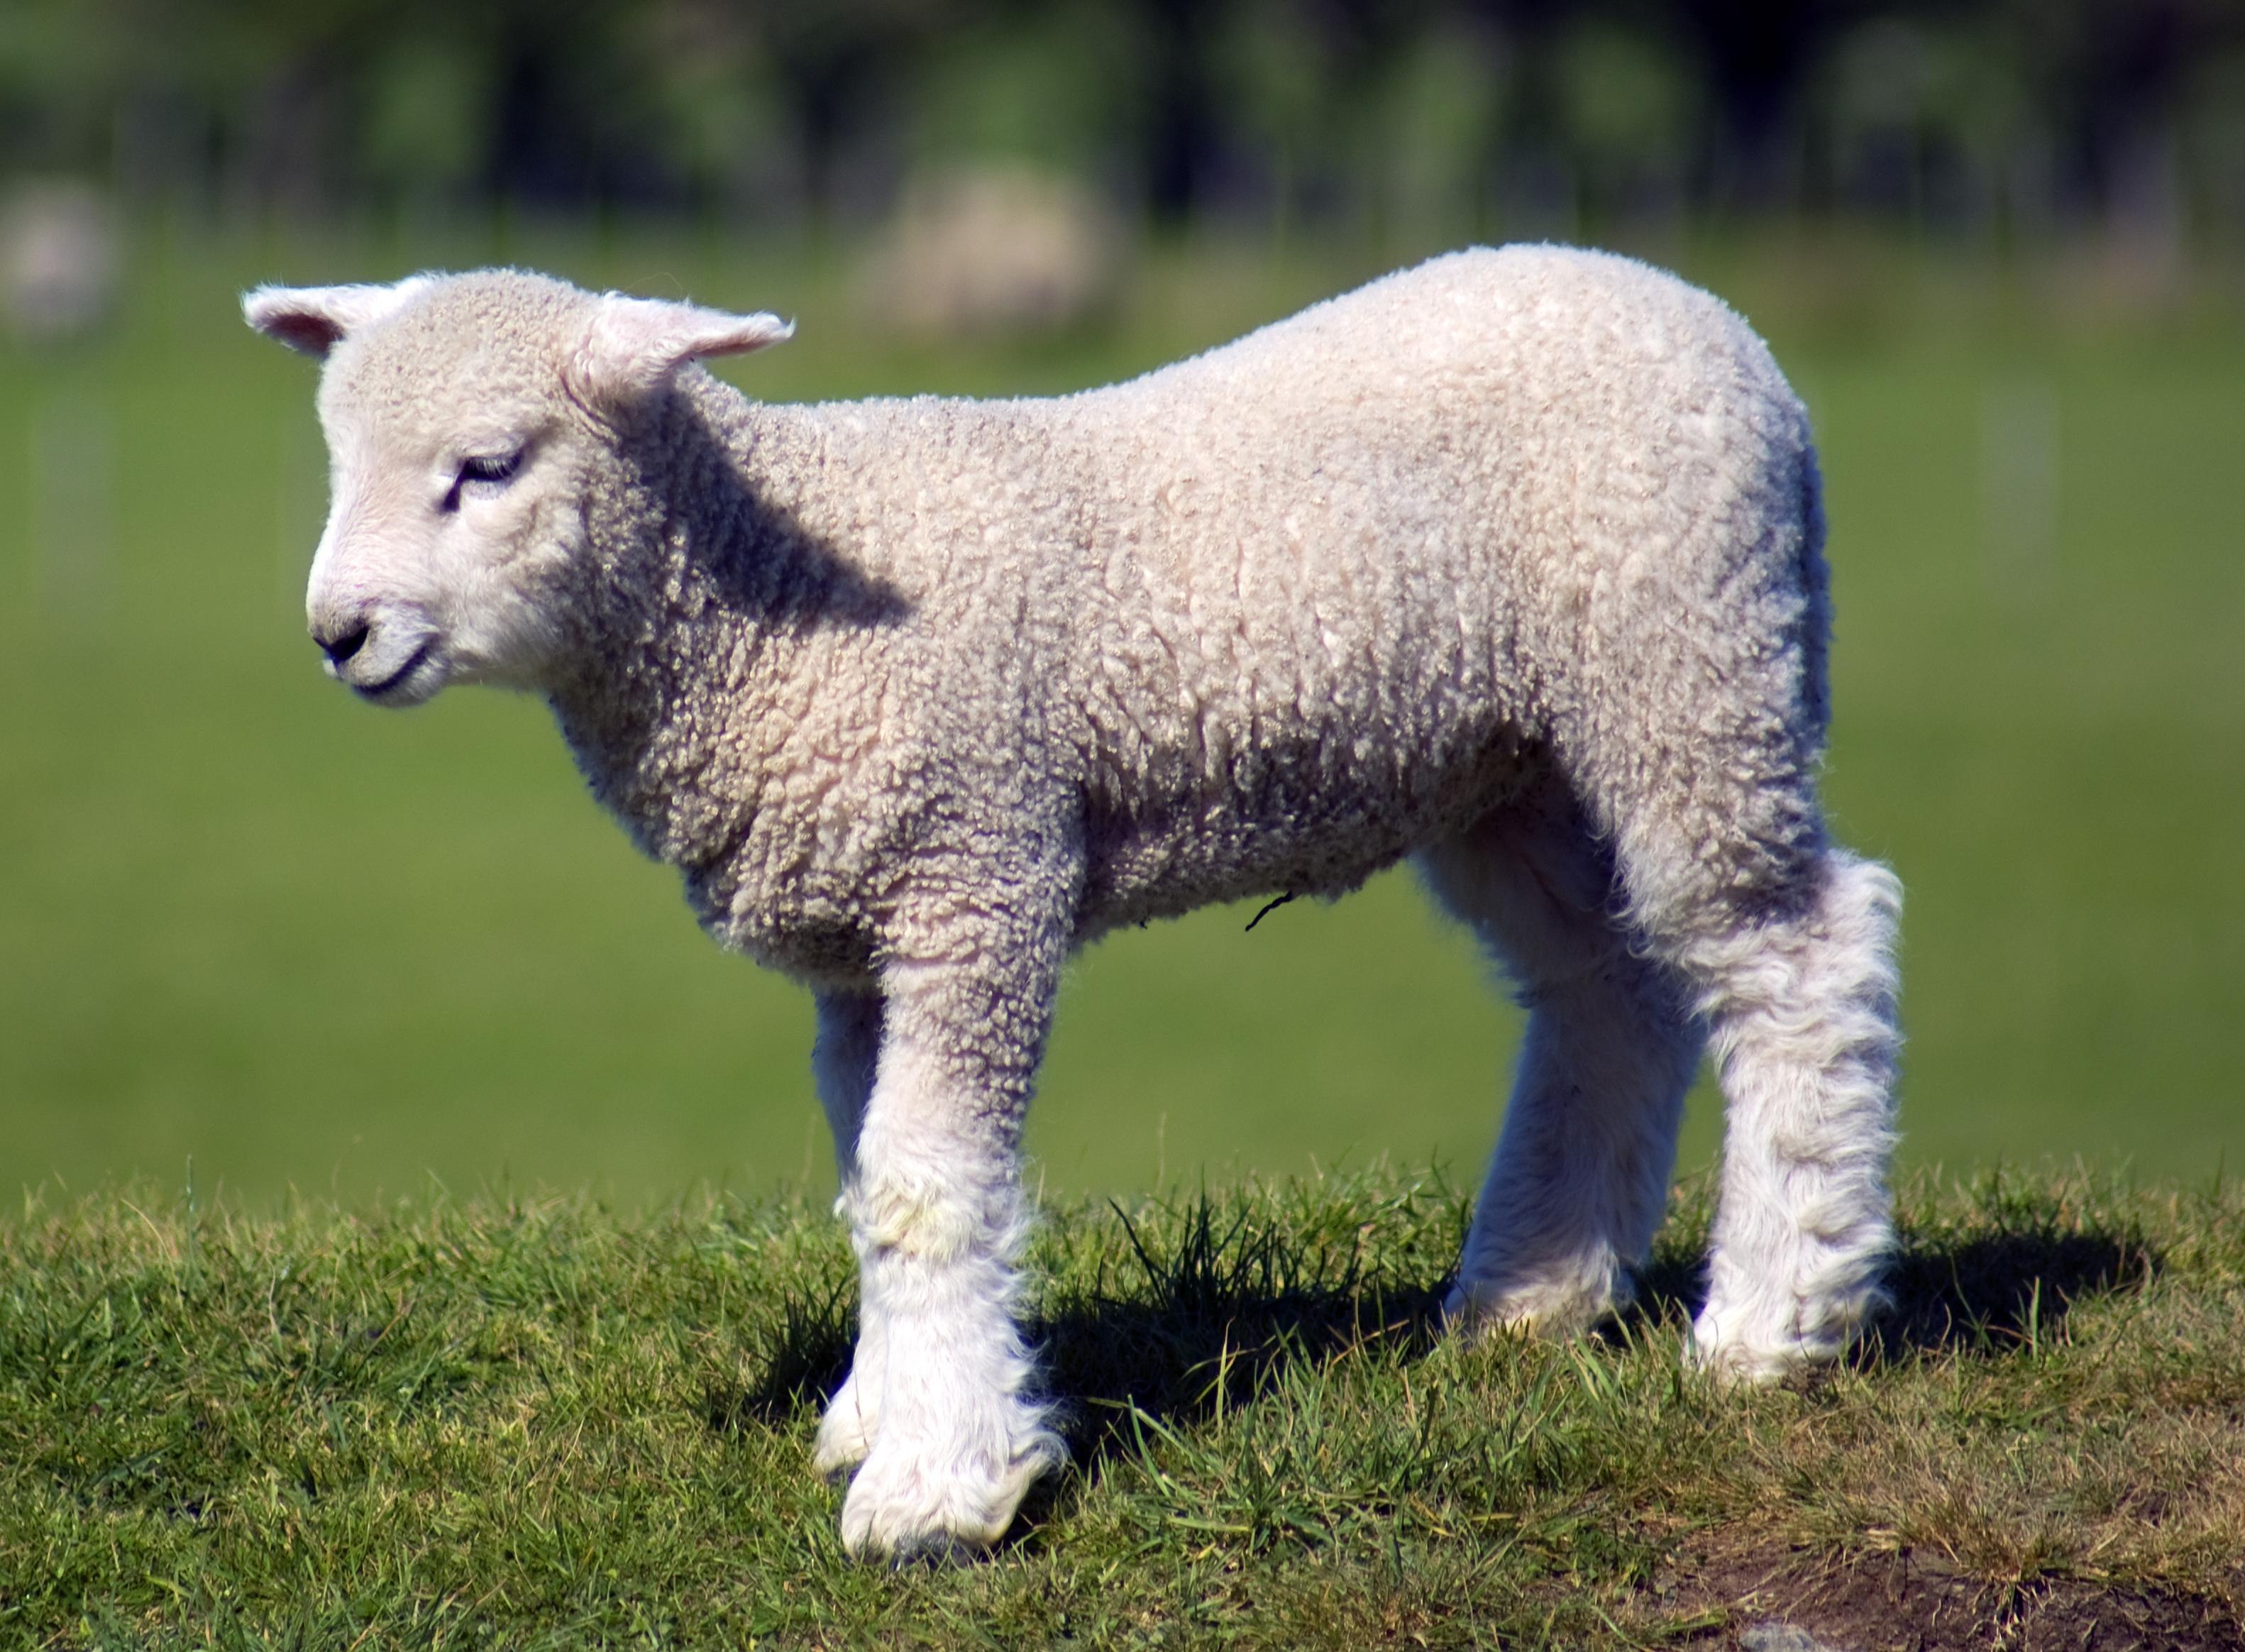 Lamb dynamic